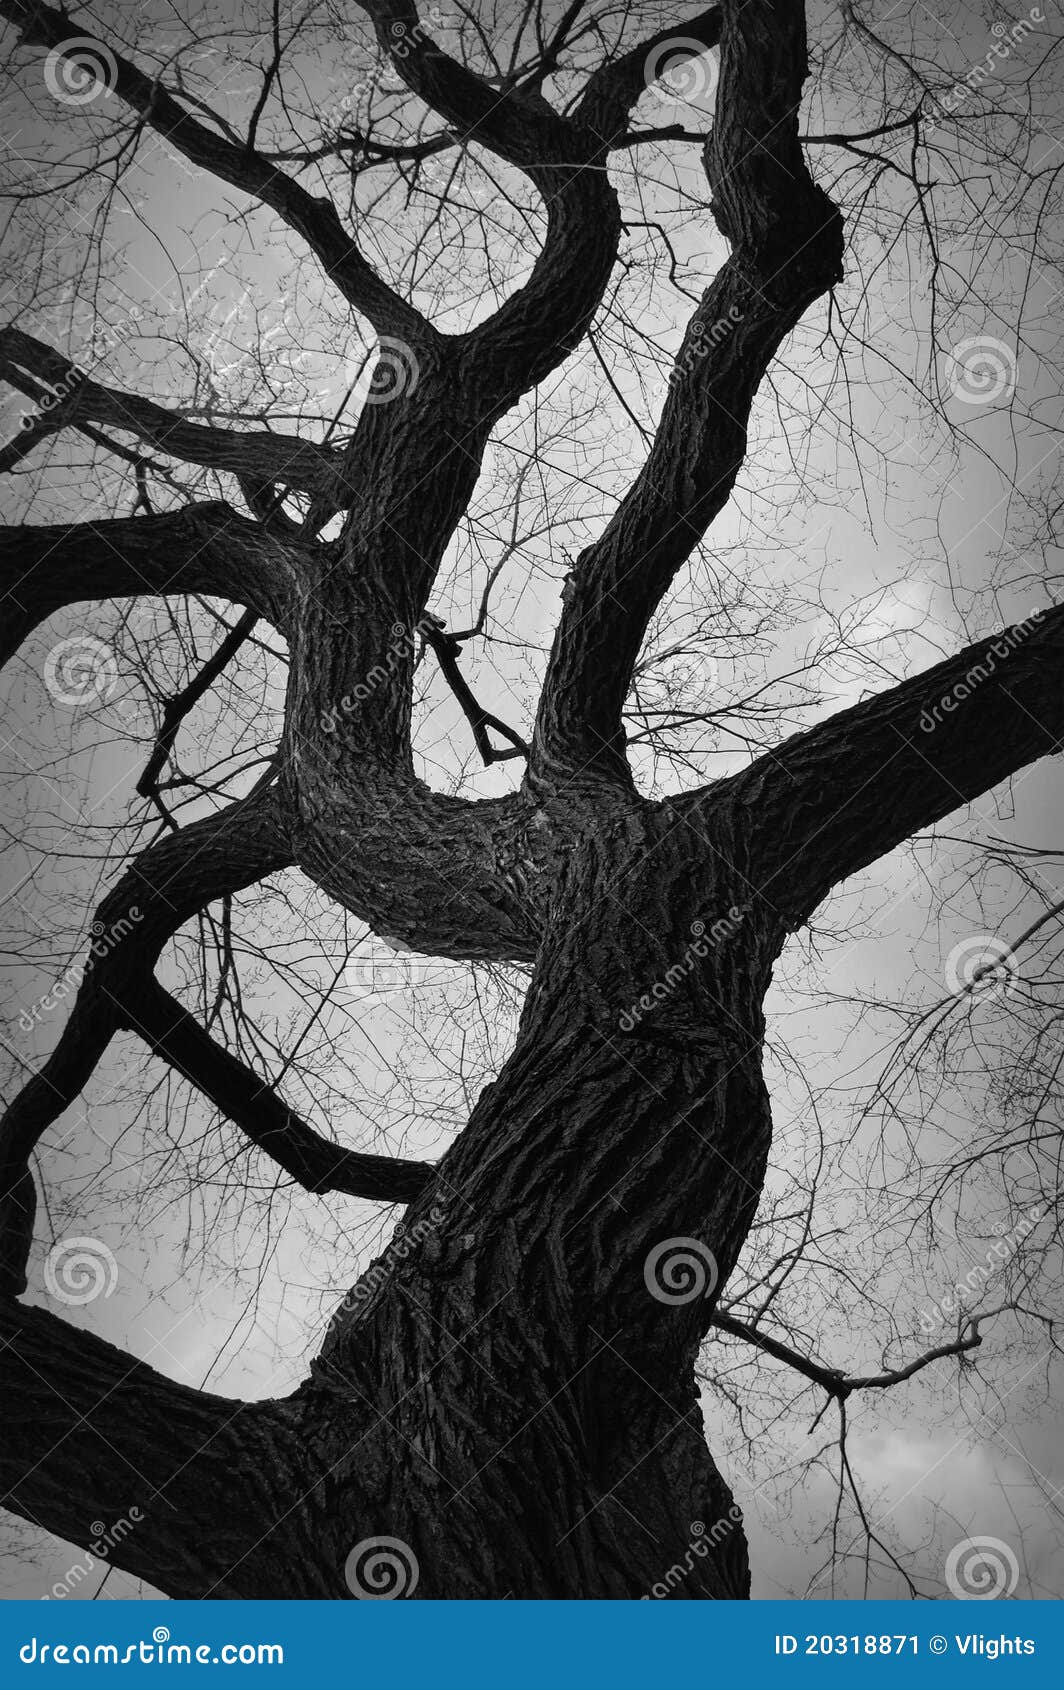 gnarly tree